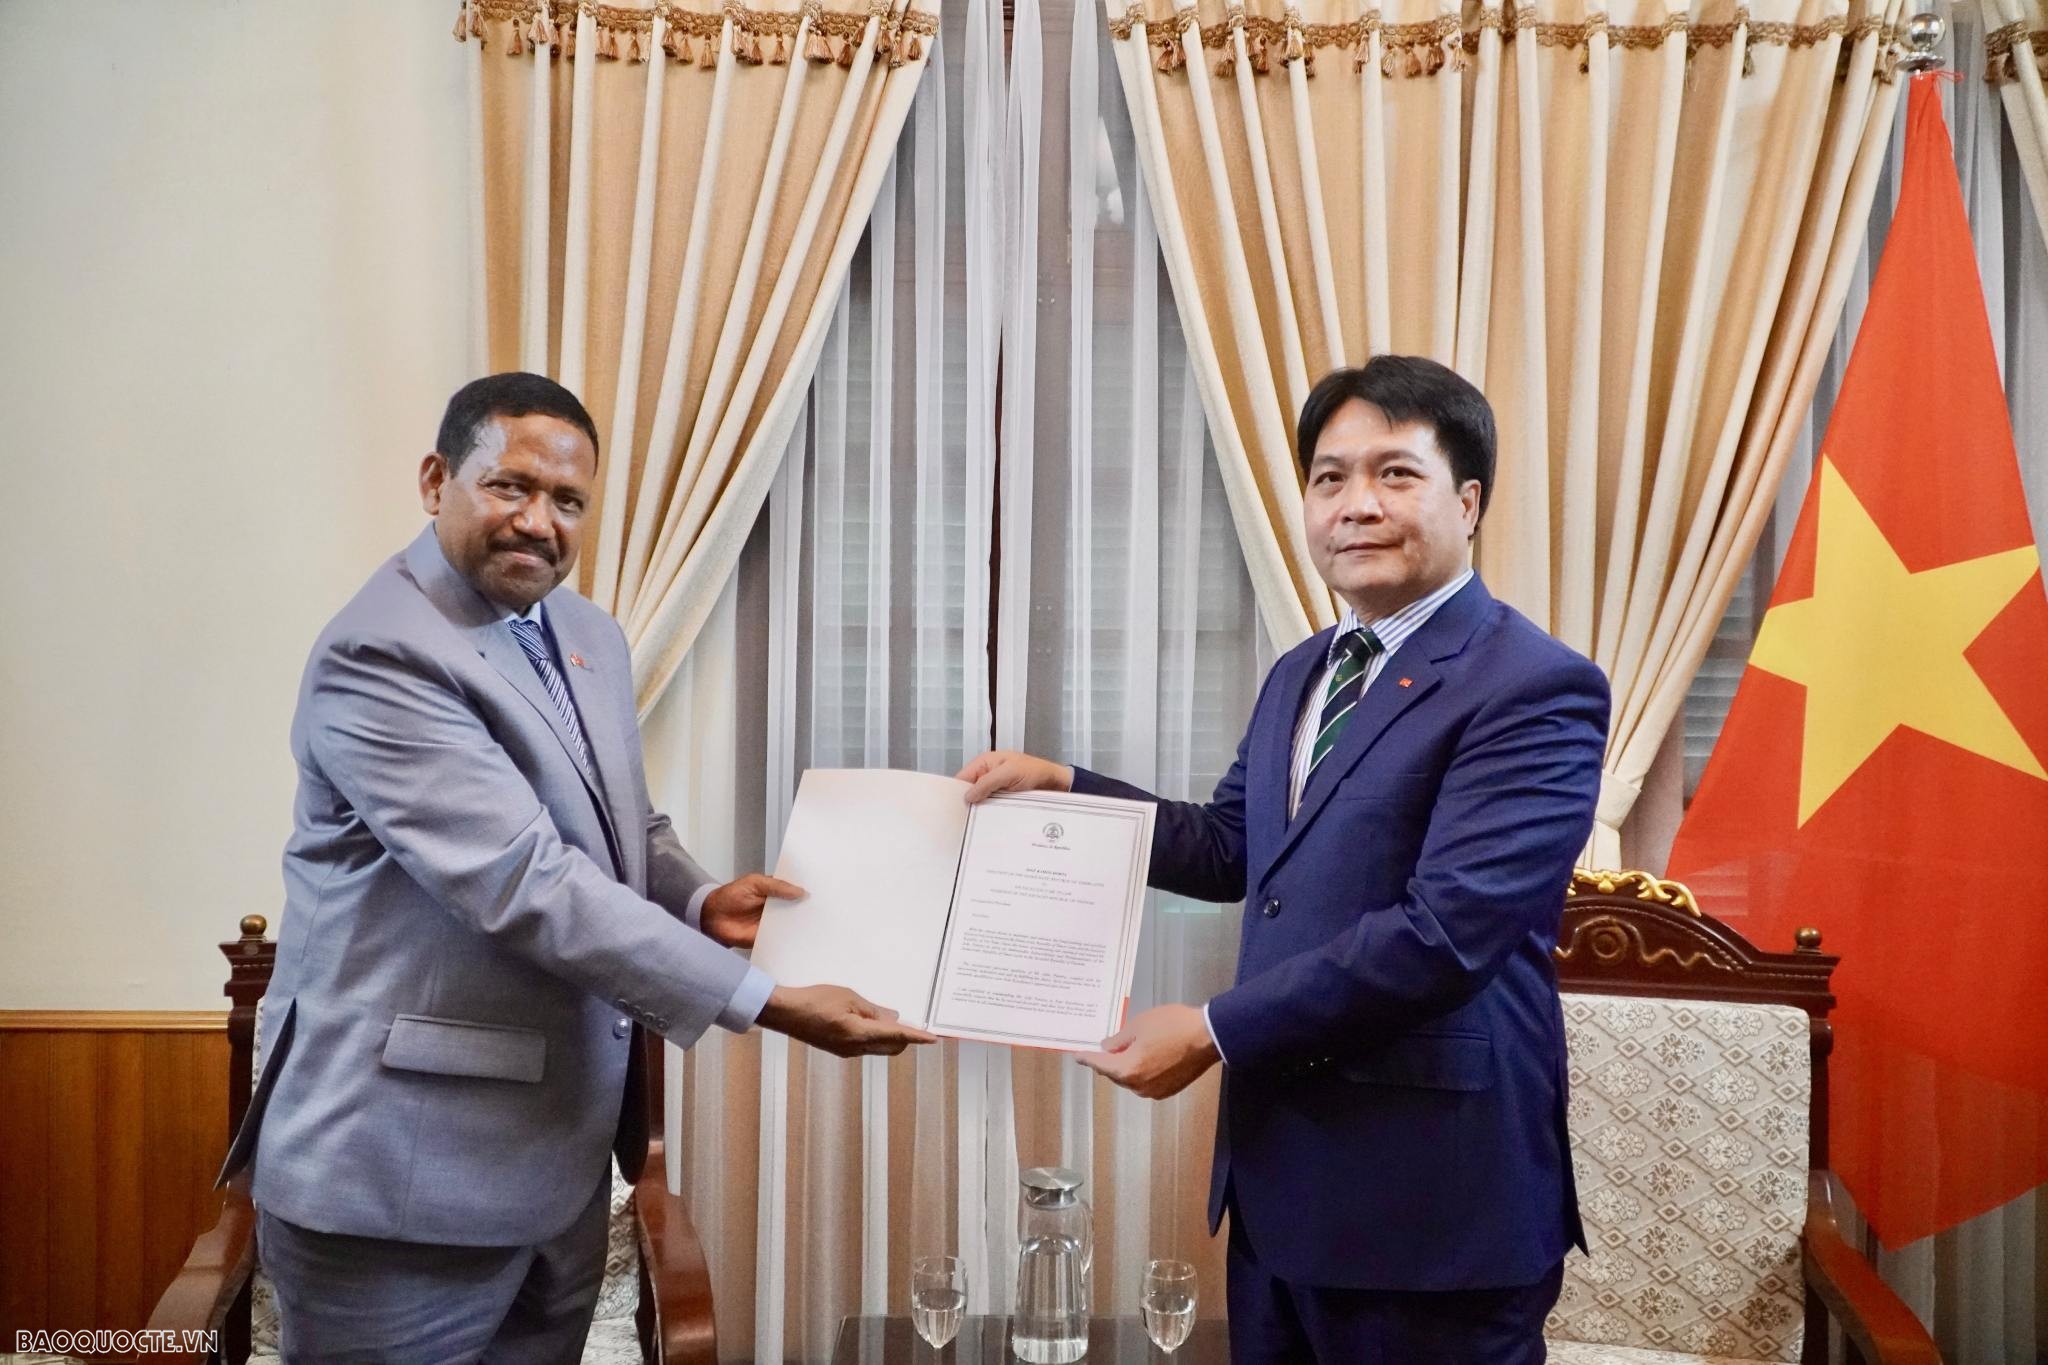 Bộ Ngoại giao tiếp nhận bản sao Thư ủy nhiệm bổ nhiệm Đại sứ Timor-Leste và Nicaragua tại Việt Nam